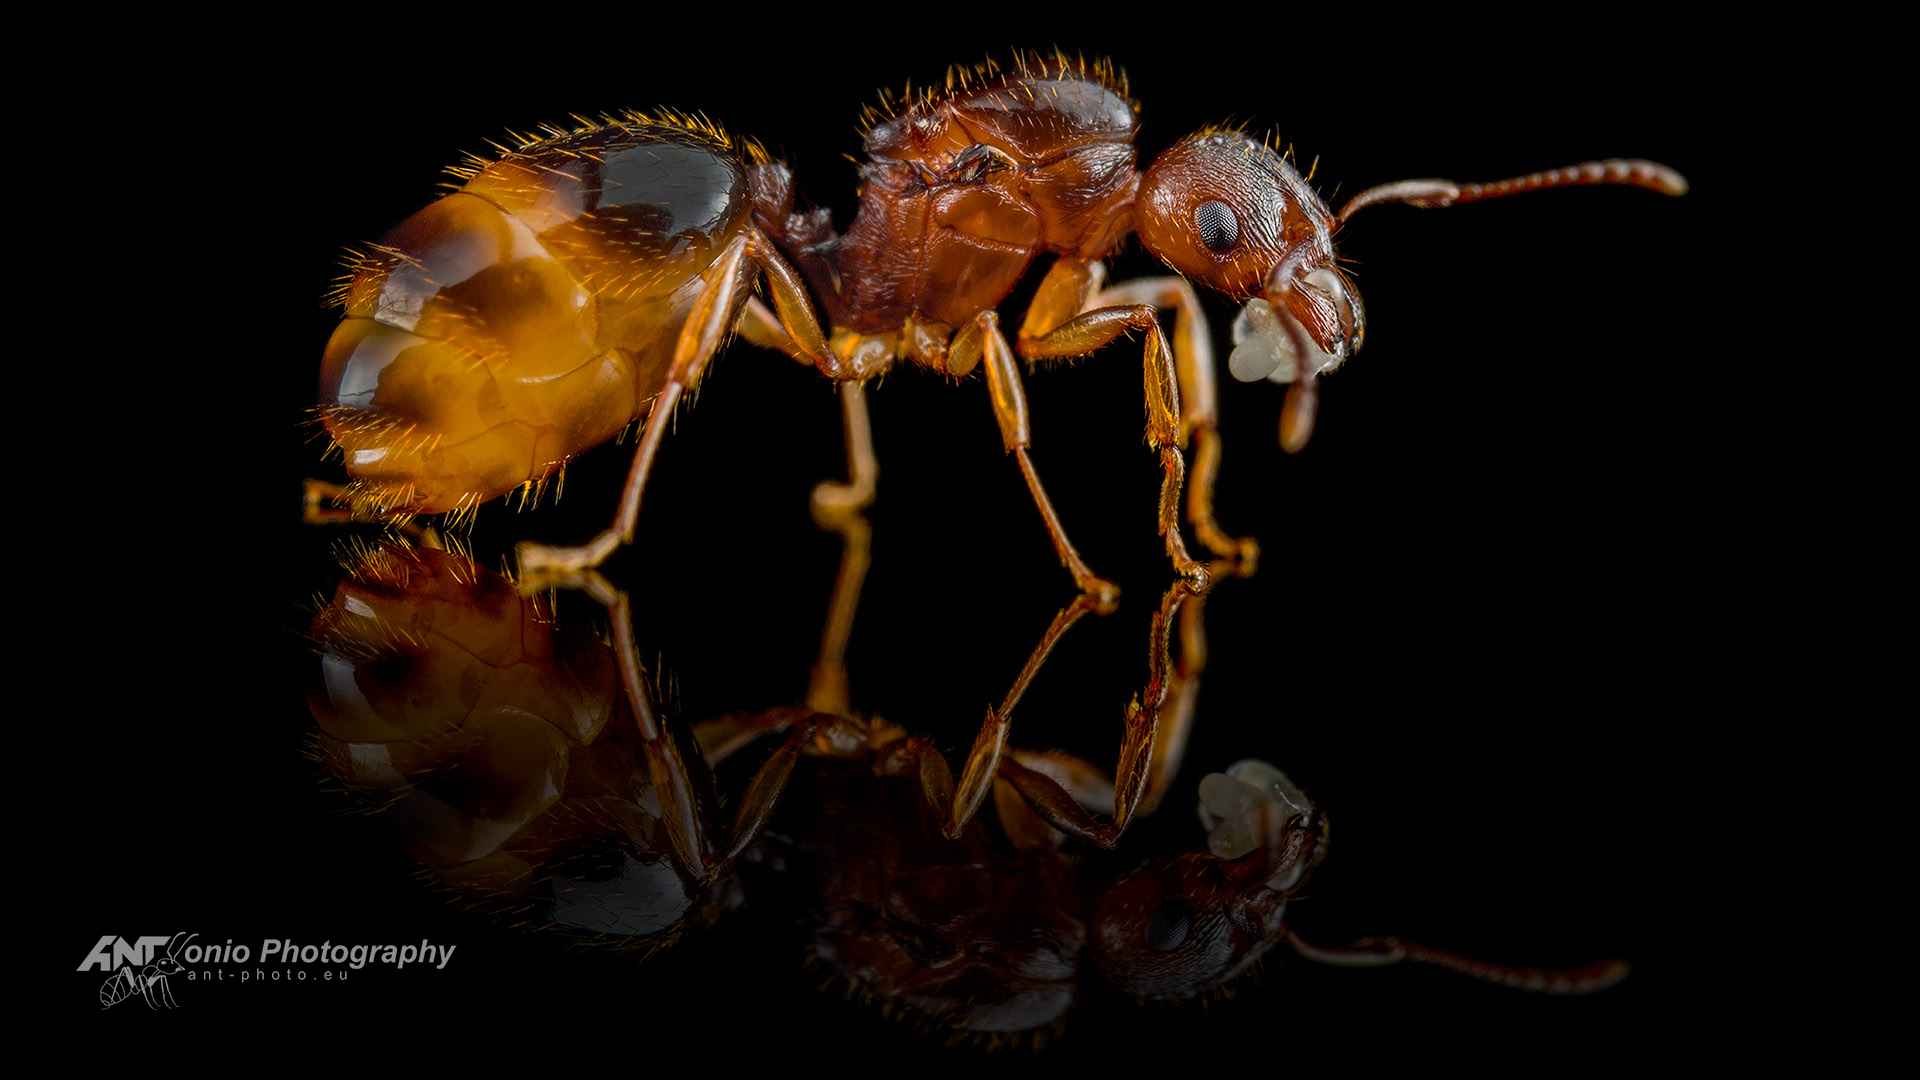 Ant Aphaenogaster subterranea queen